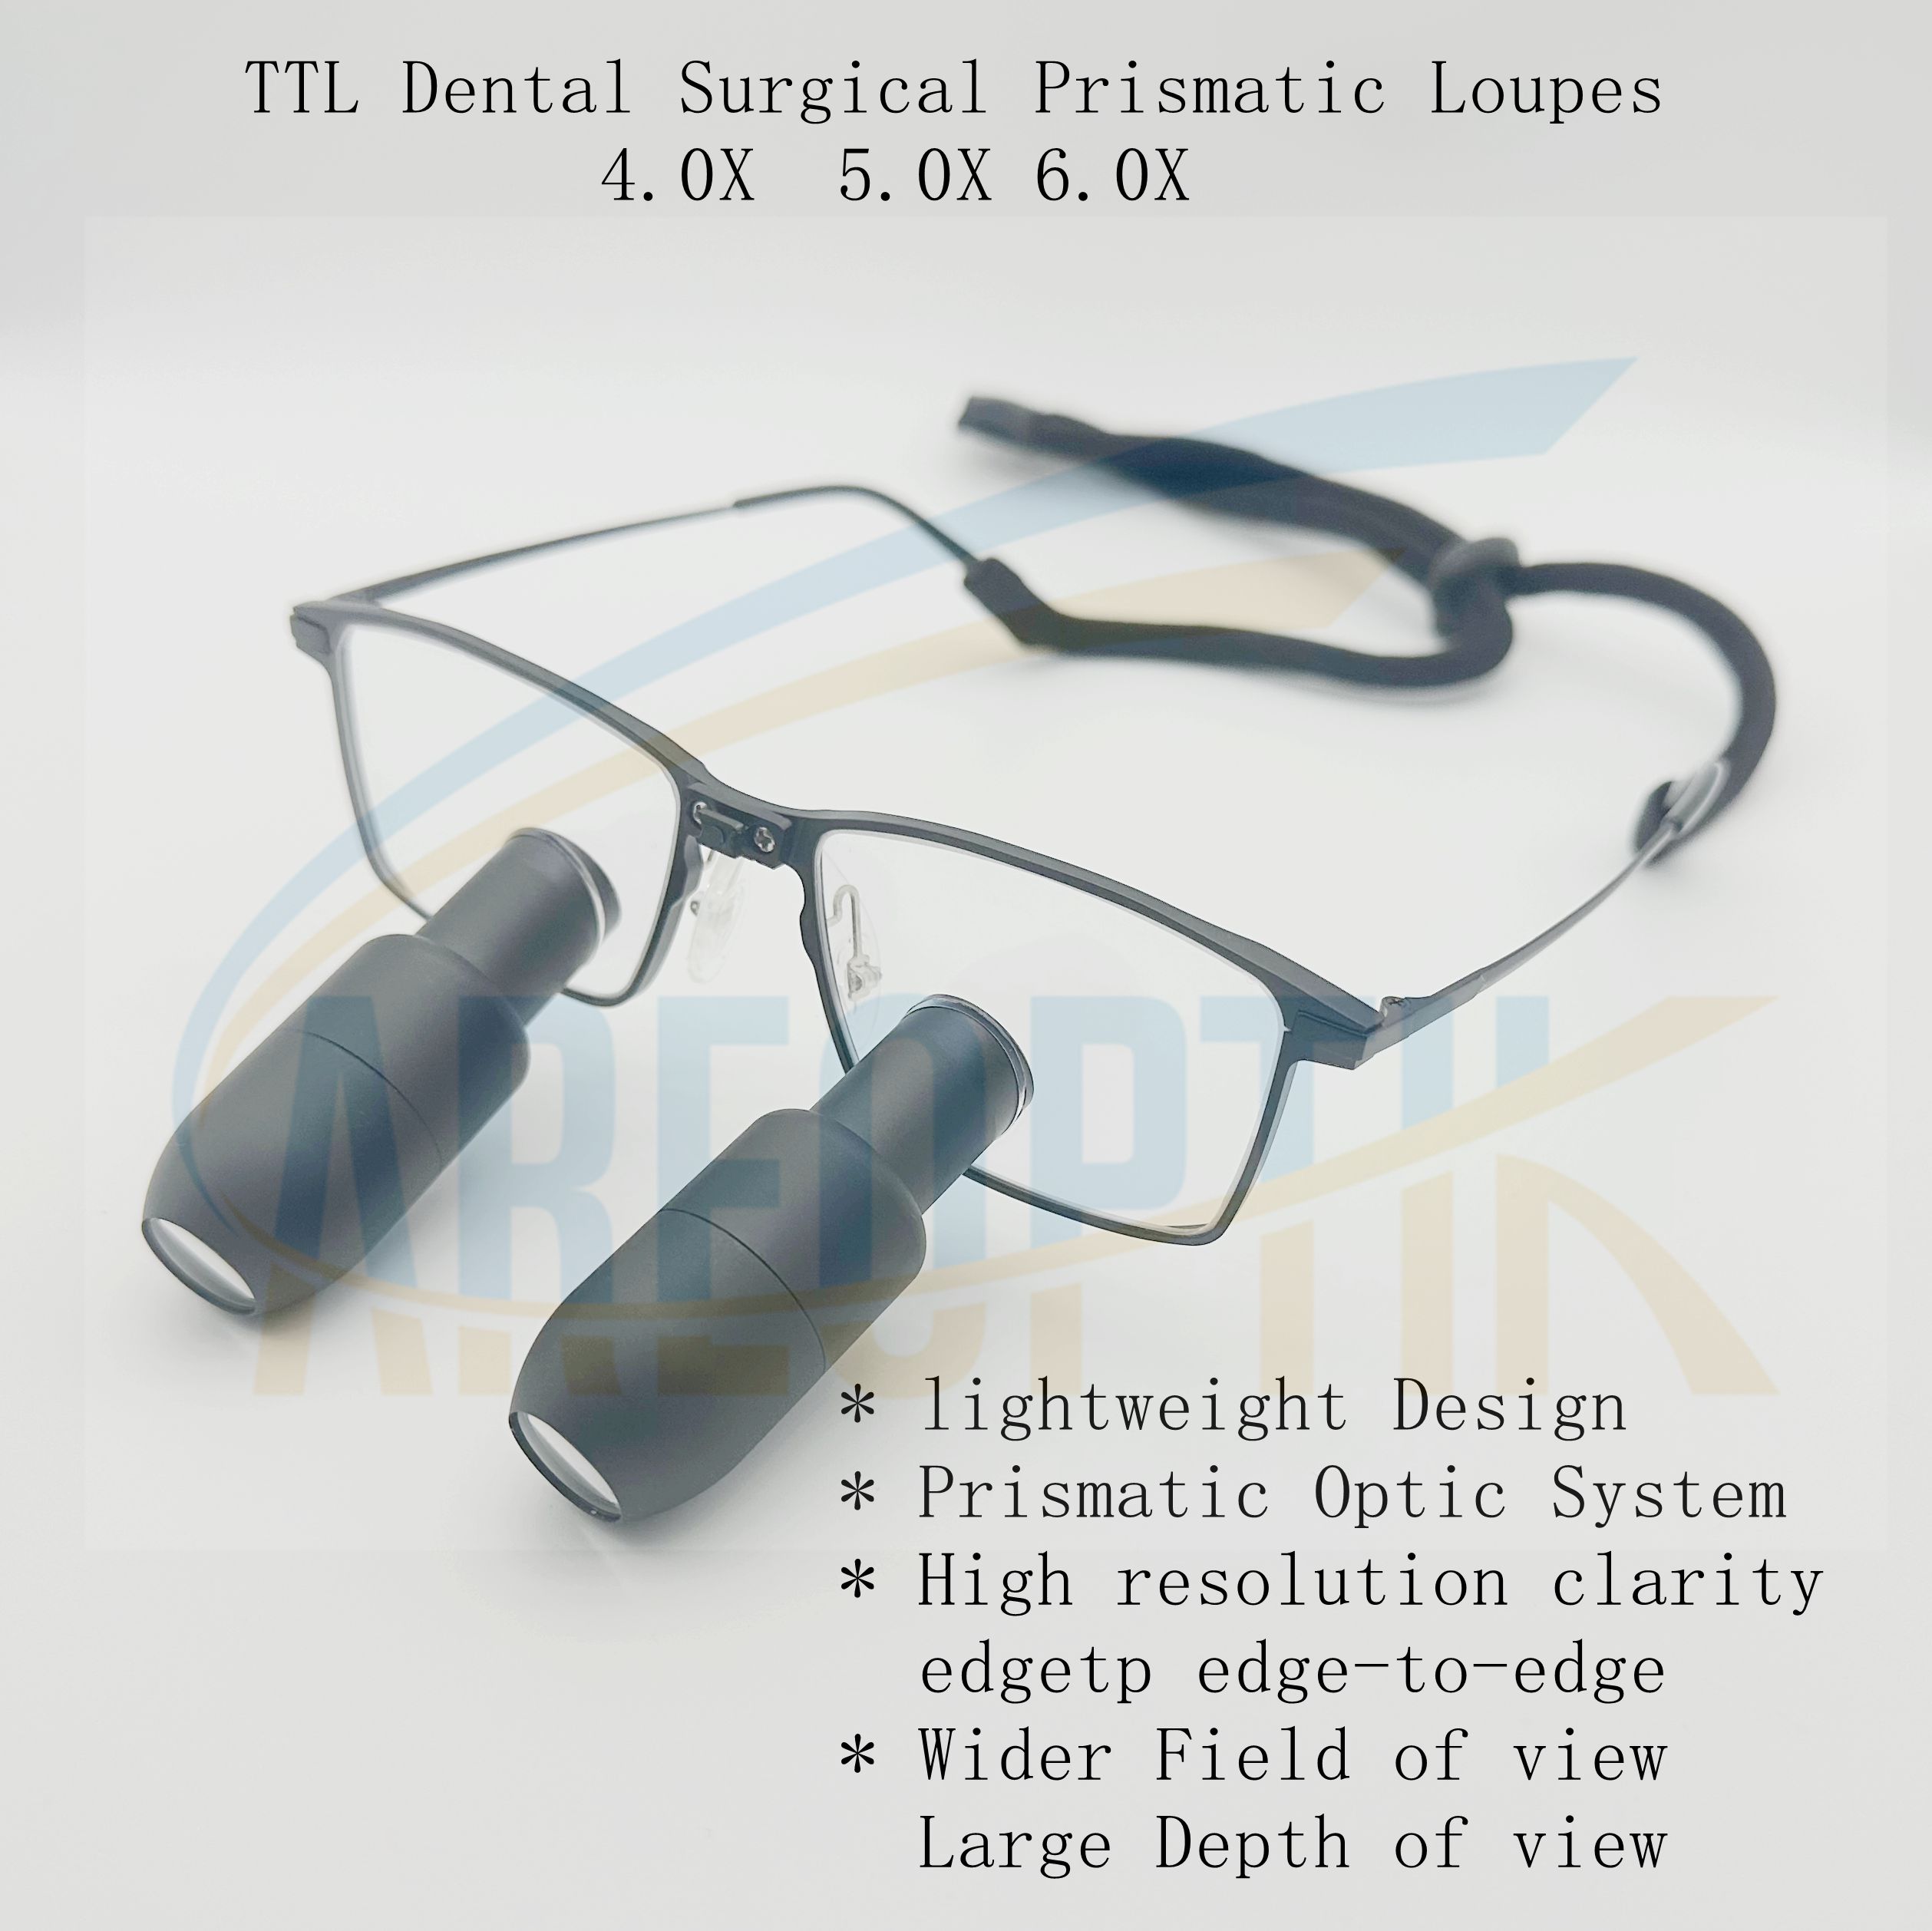 careoptik prismatic TTL dental surgical loupes